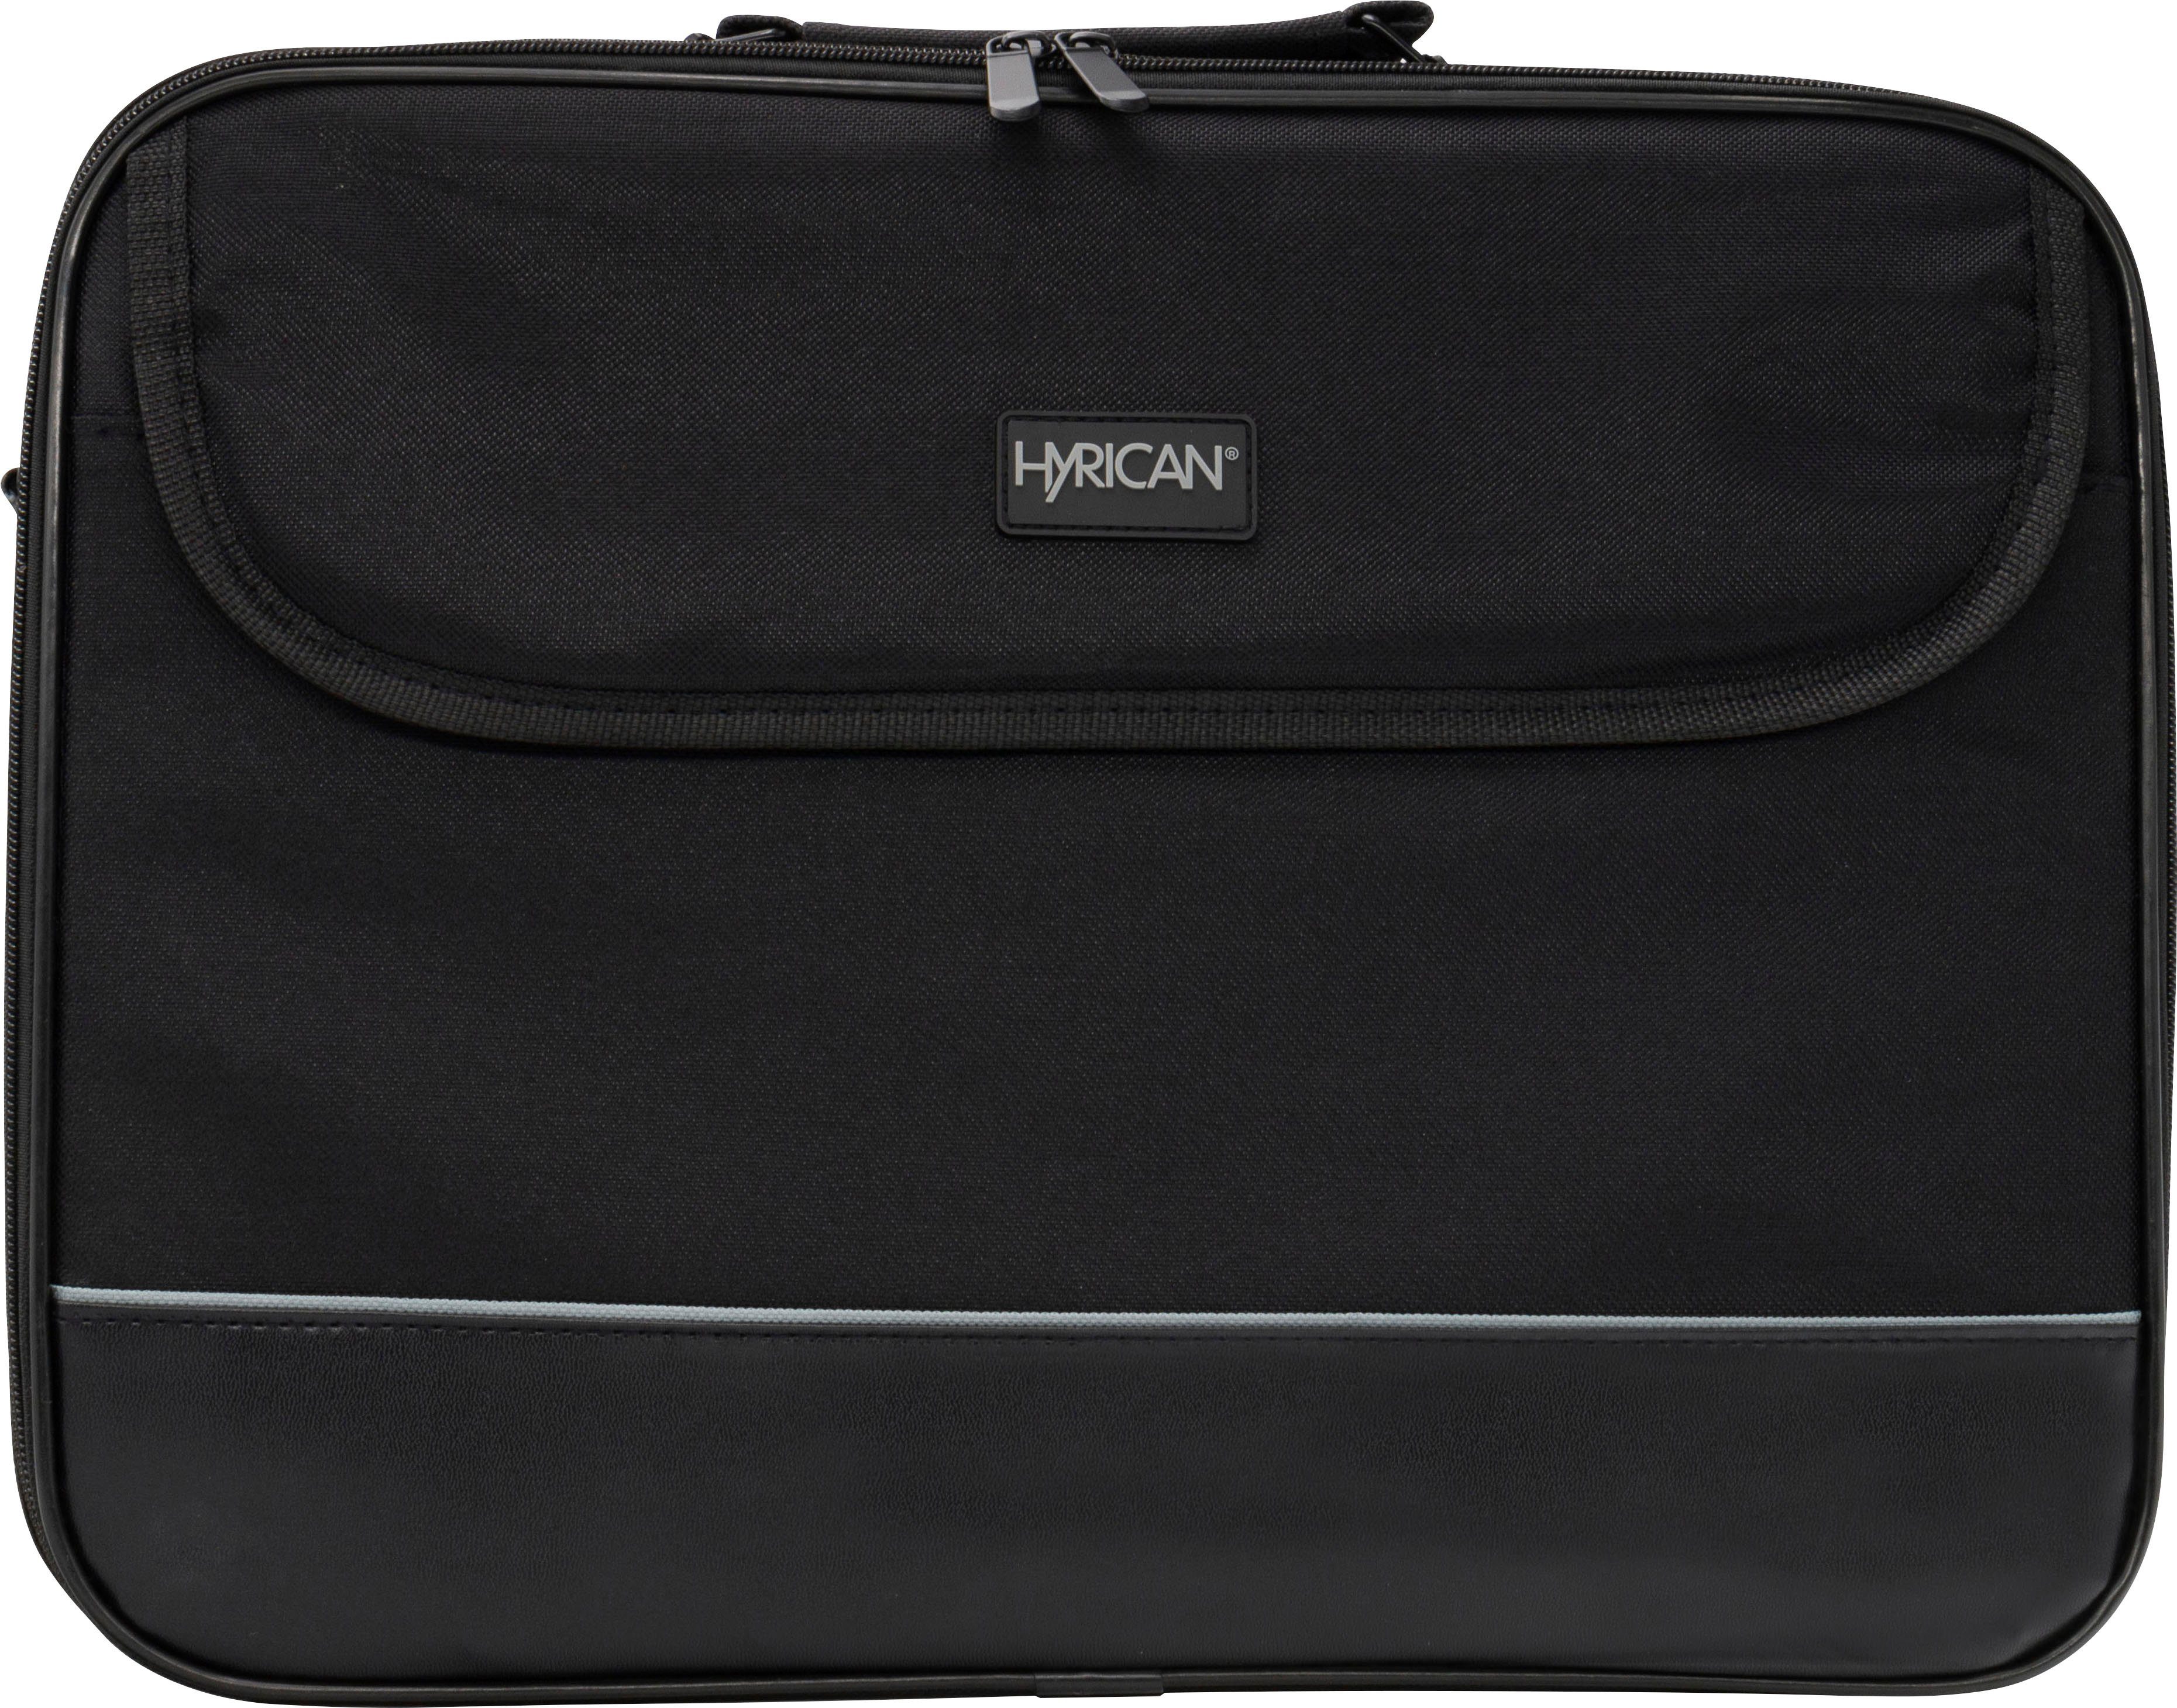 Hyrican Laptoptasche Laptop Tasche für Notebooks bis 15,6 Zoll, Business Computertasche, Umhängetasche, Schultertasche, Notebooktasche